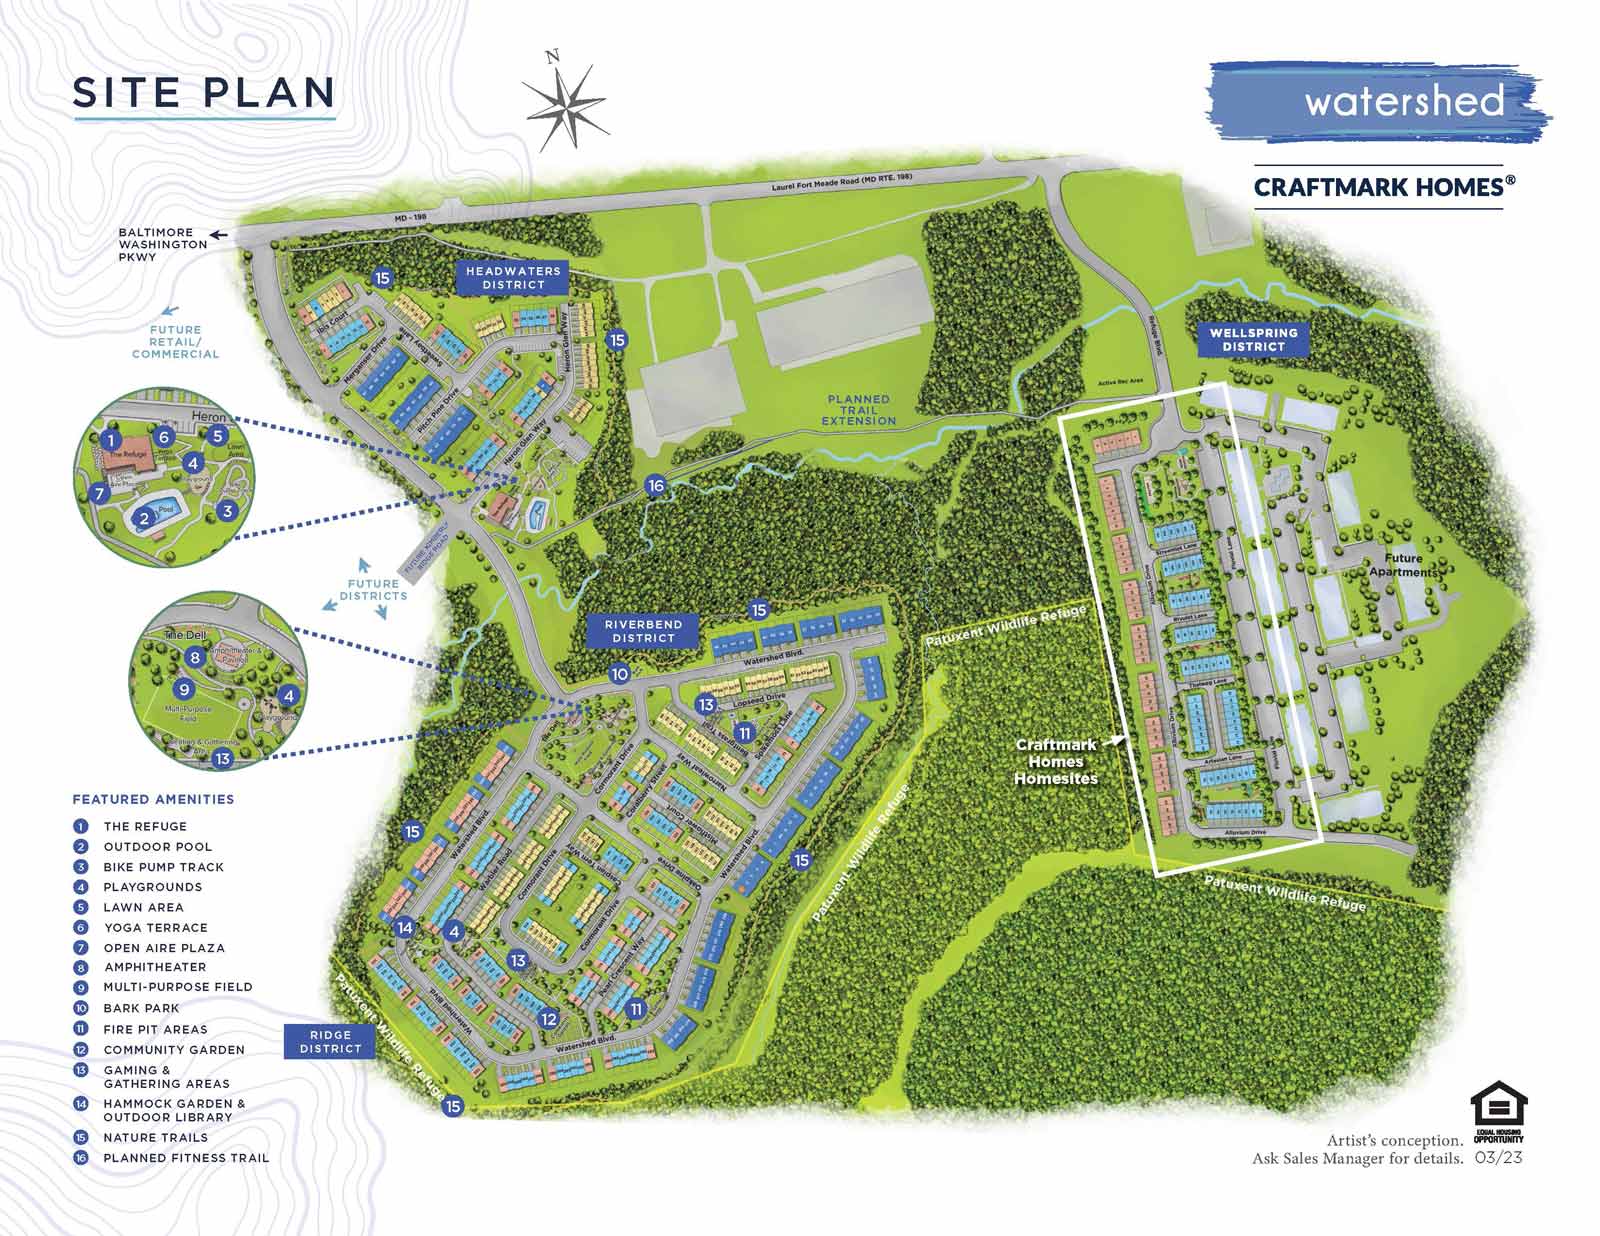 Watershed Site Plan, Craftmark Homes